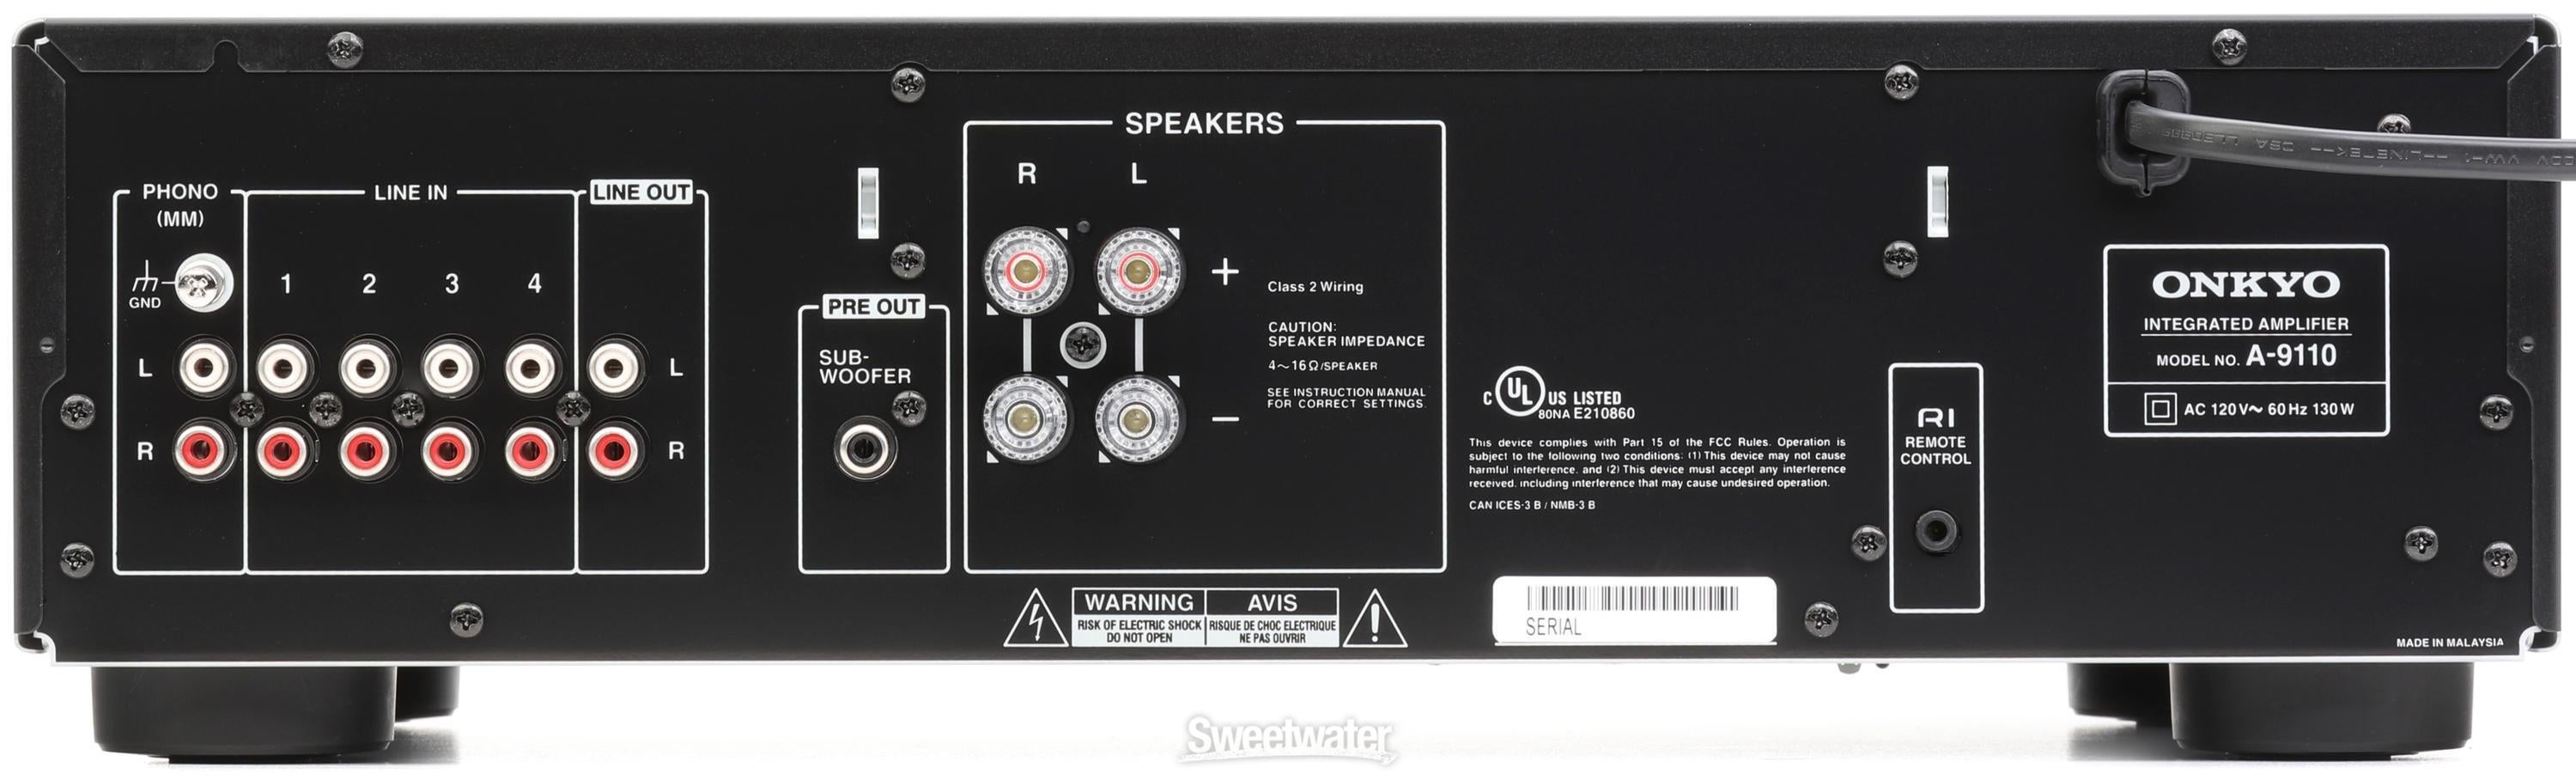 Onkyo A-9110 50-watt Stereo Integrated Amplifier | Sweetwater